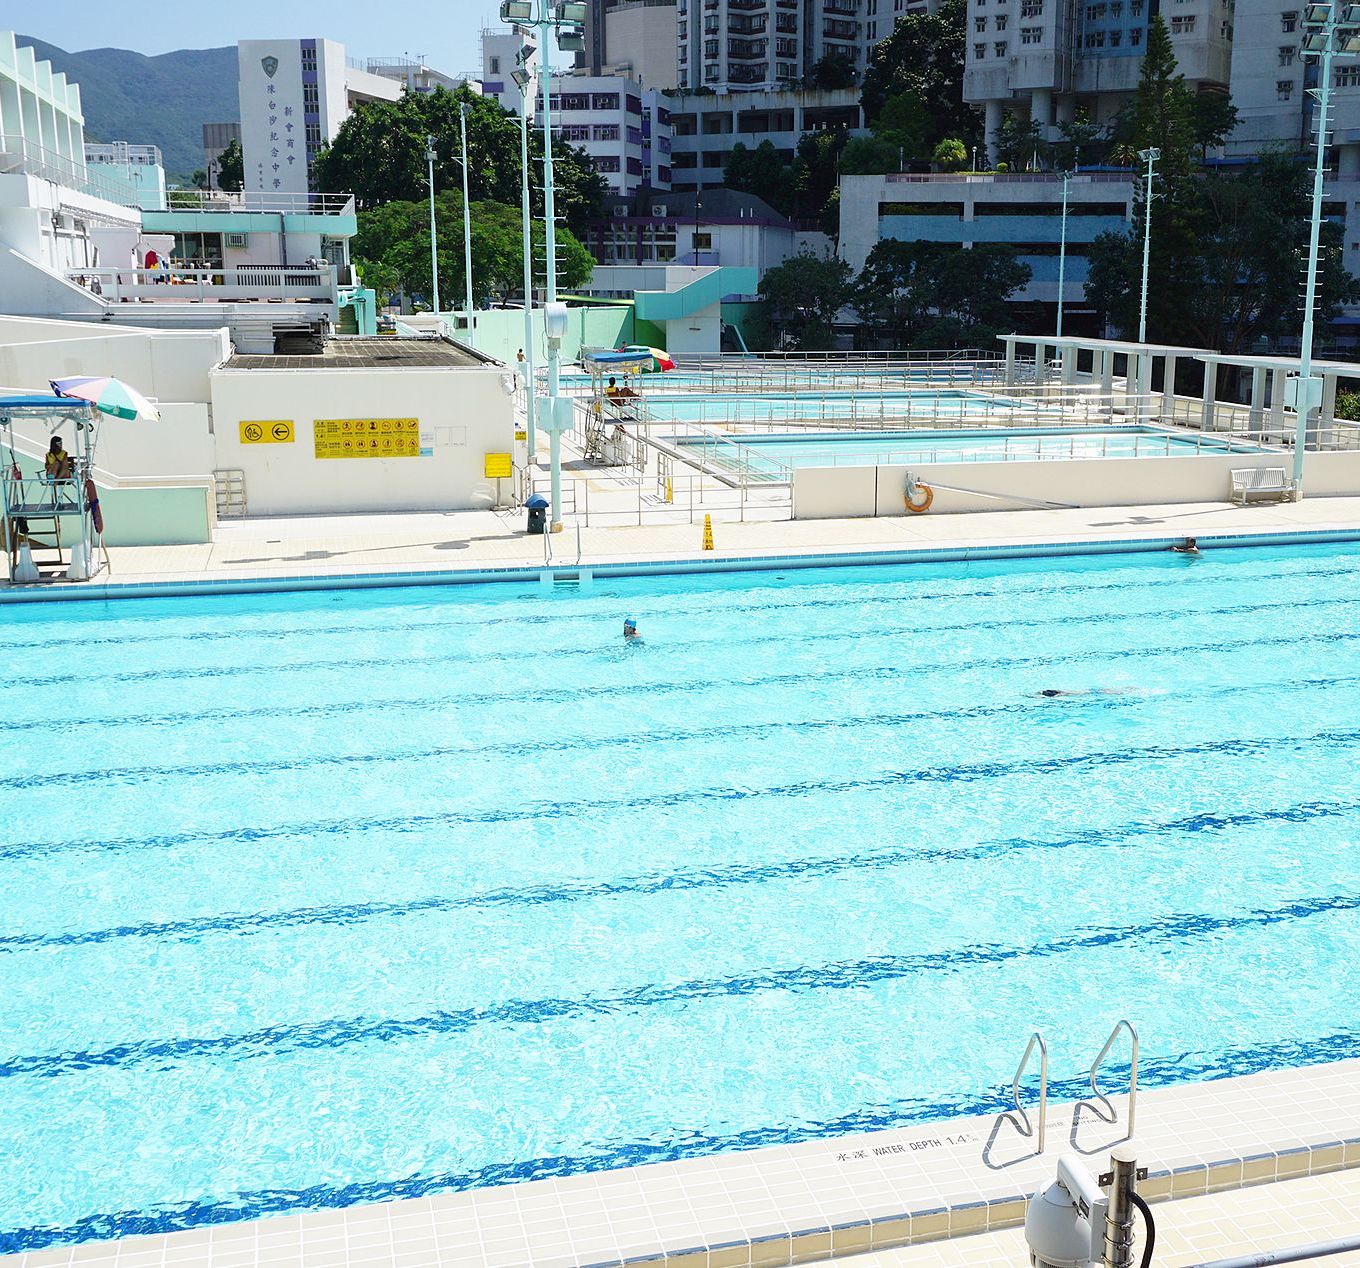 Pao Yue Kong Swimming Pool, Hong Kong